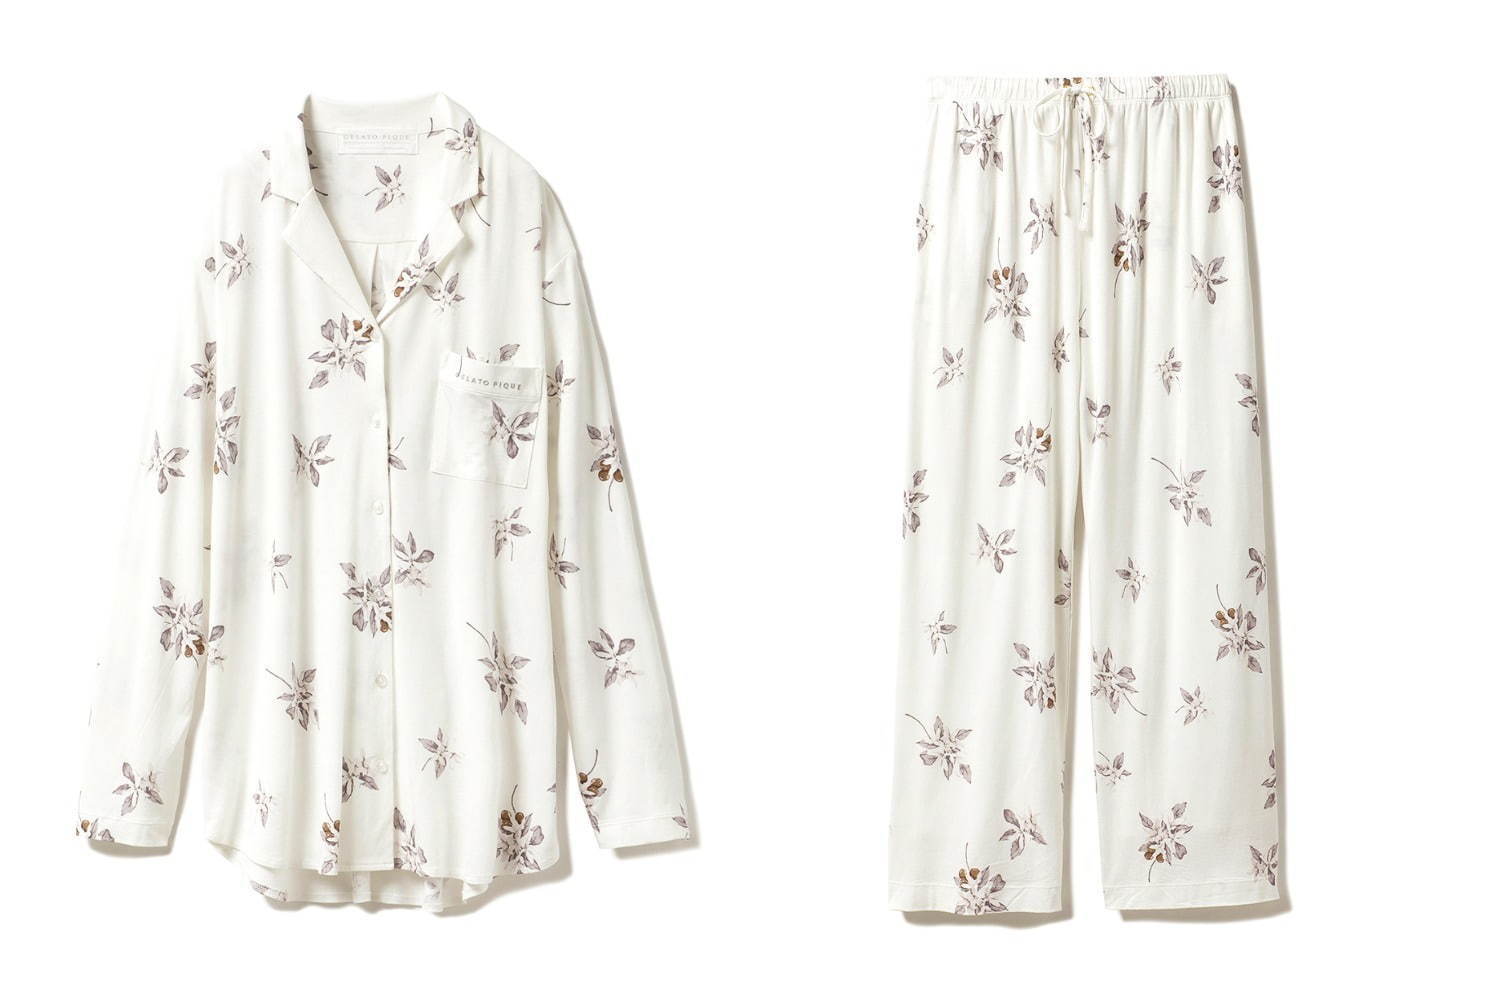 ジェラート ピケ コーヒーの花 モチーフのパジャマ ルームウェア 自宅ケアokのニットカーデも ファッションプレス